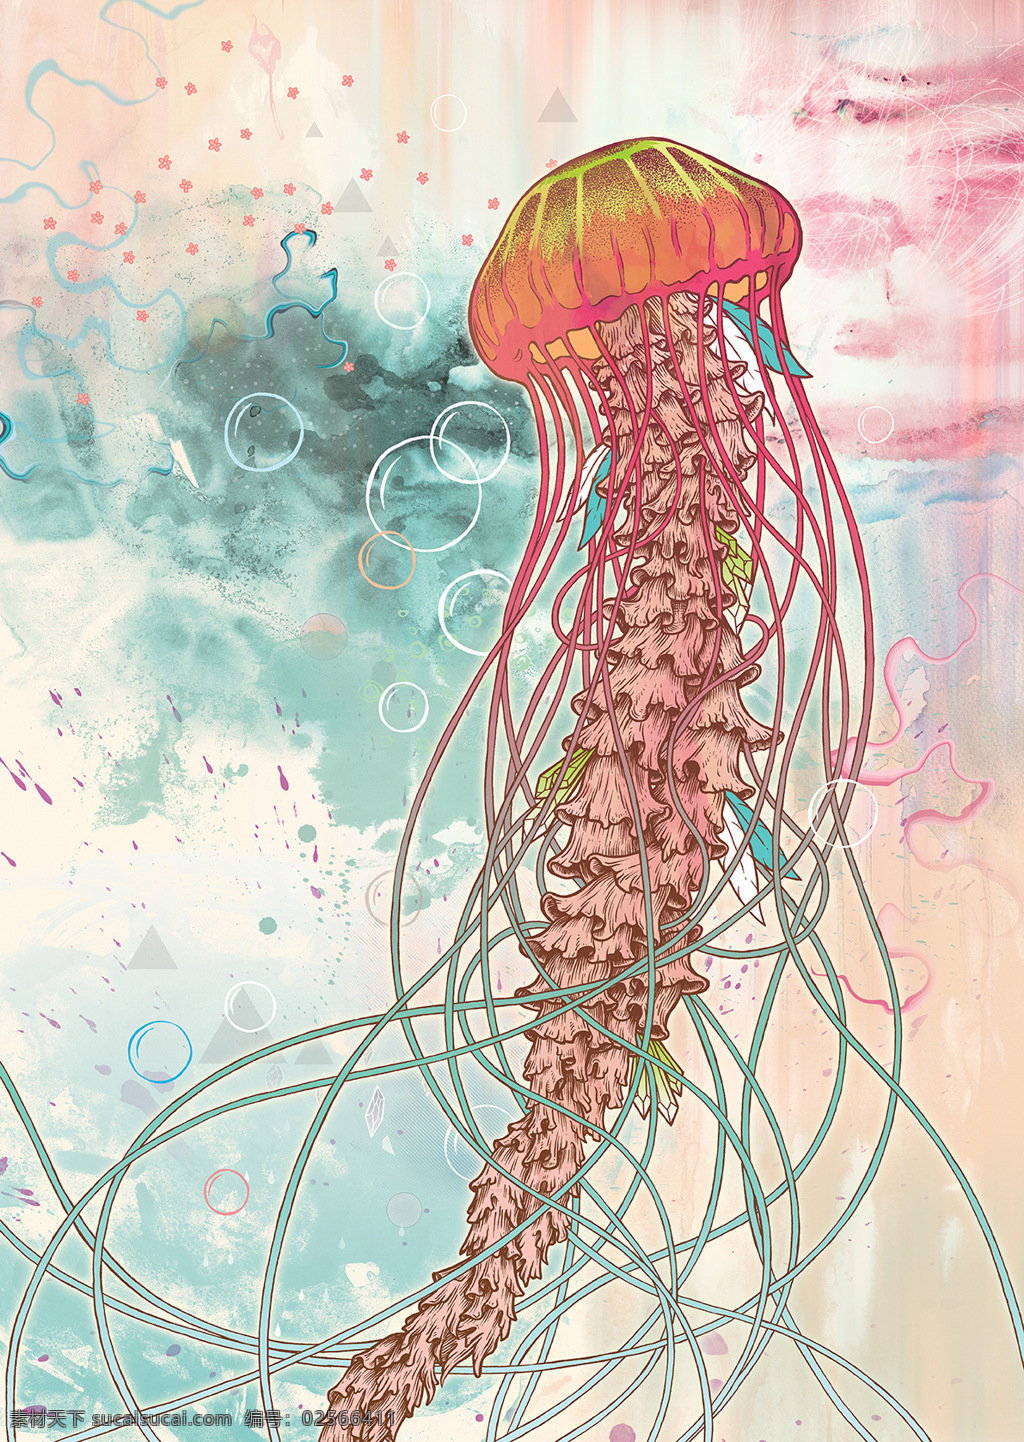 手绘 插画 海洋 水母 背景图 时尚 元素 文化艺术 绘画书法